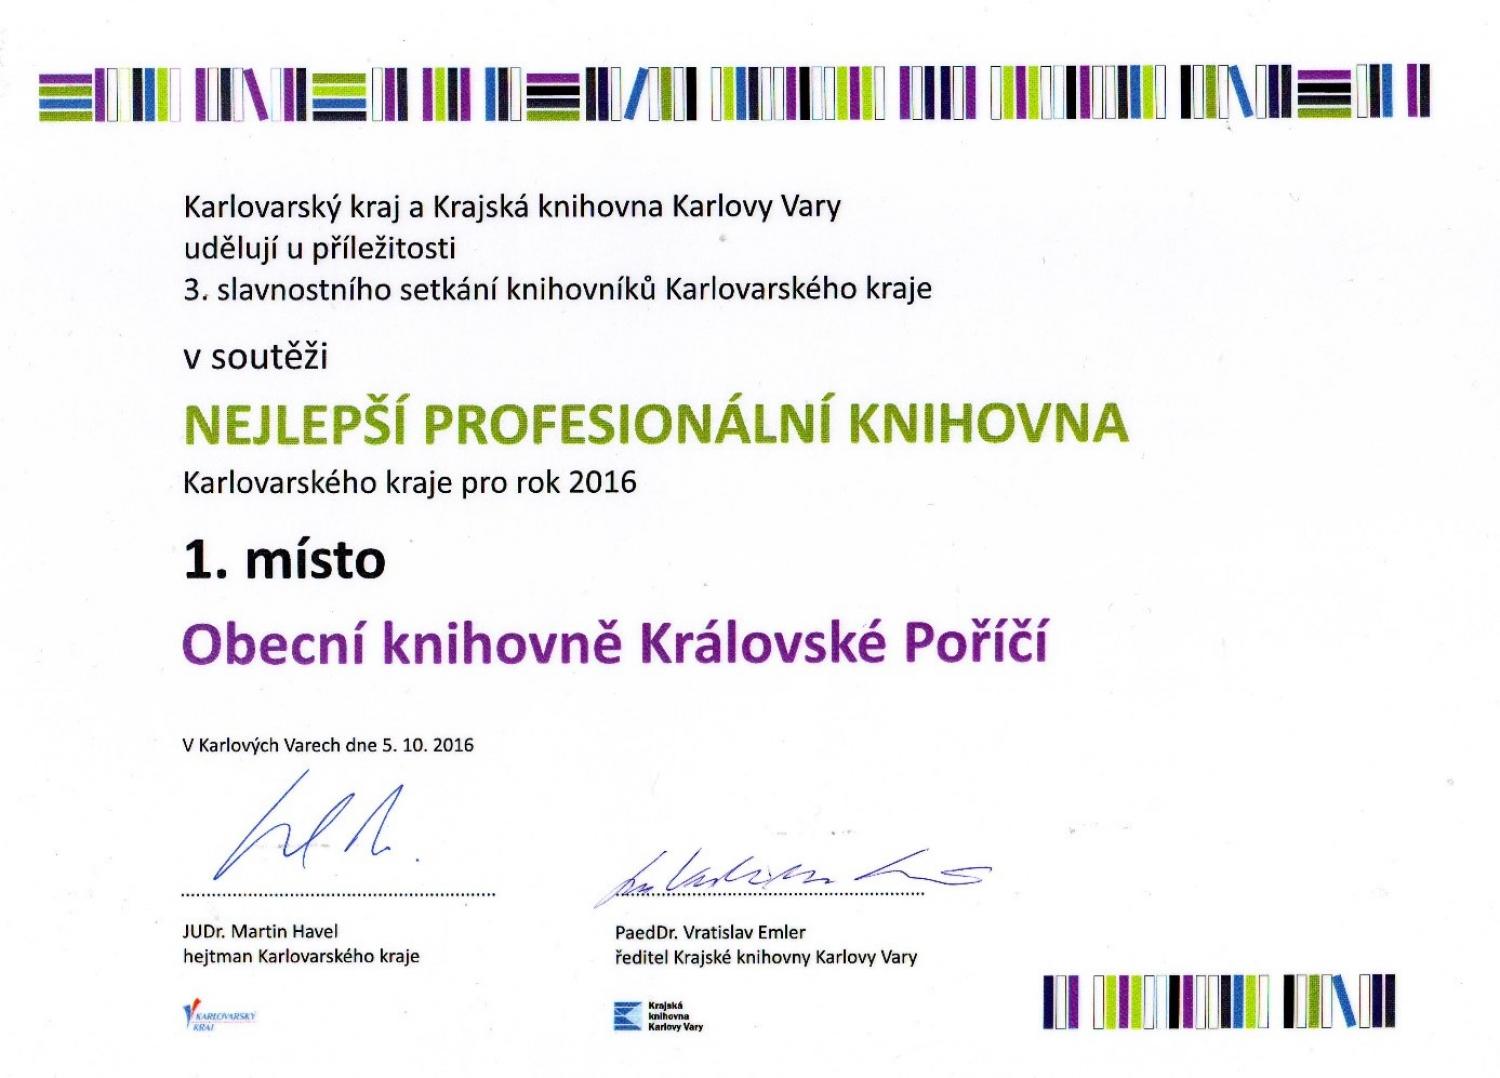 Nejlepší profesionální knihovna Karlovarského kraje 2016